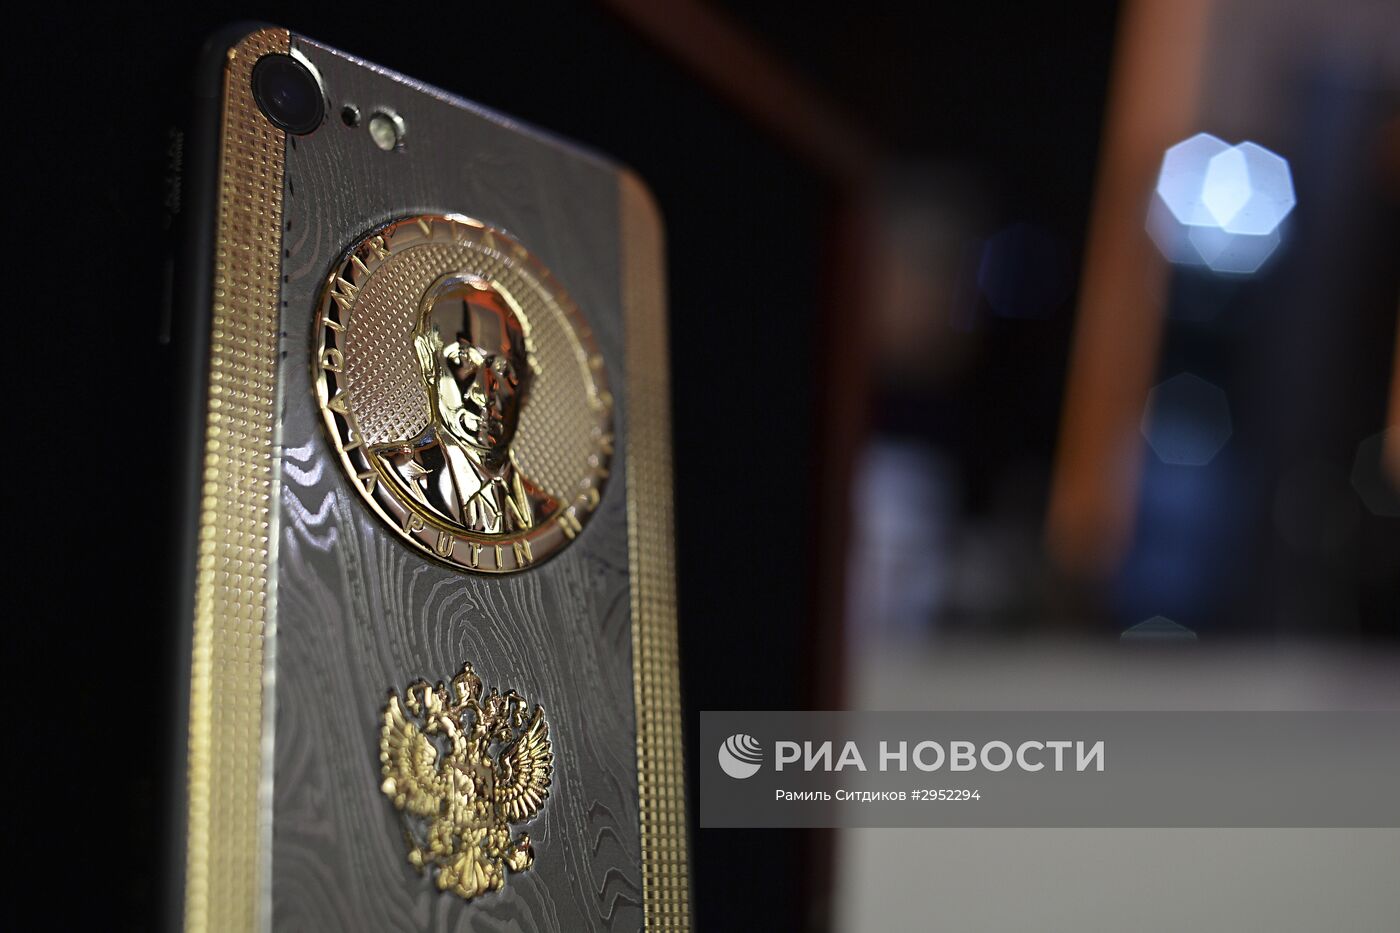 Выпущен смартфон c барельефом В. Путина в честь его дня рождения